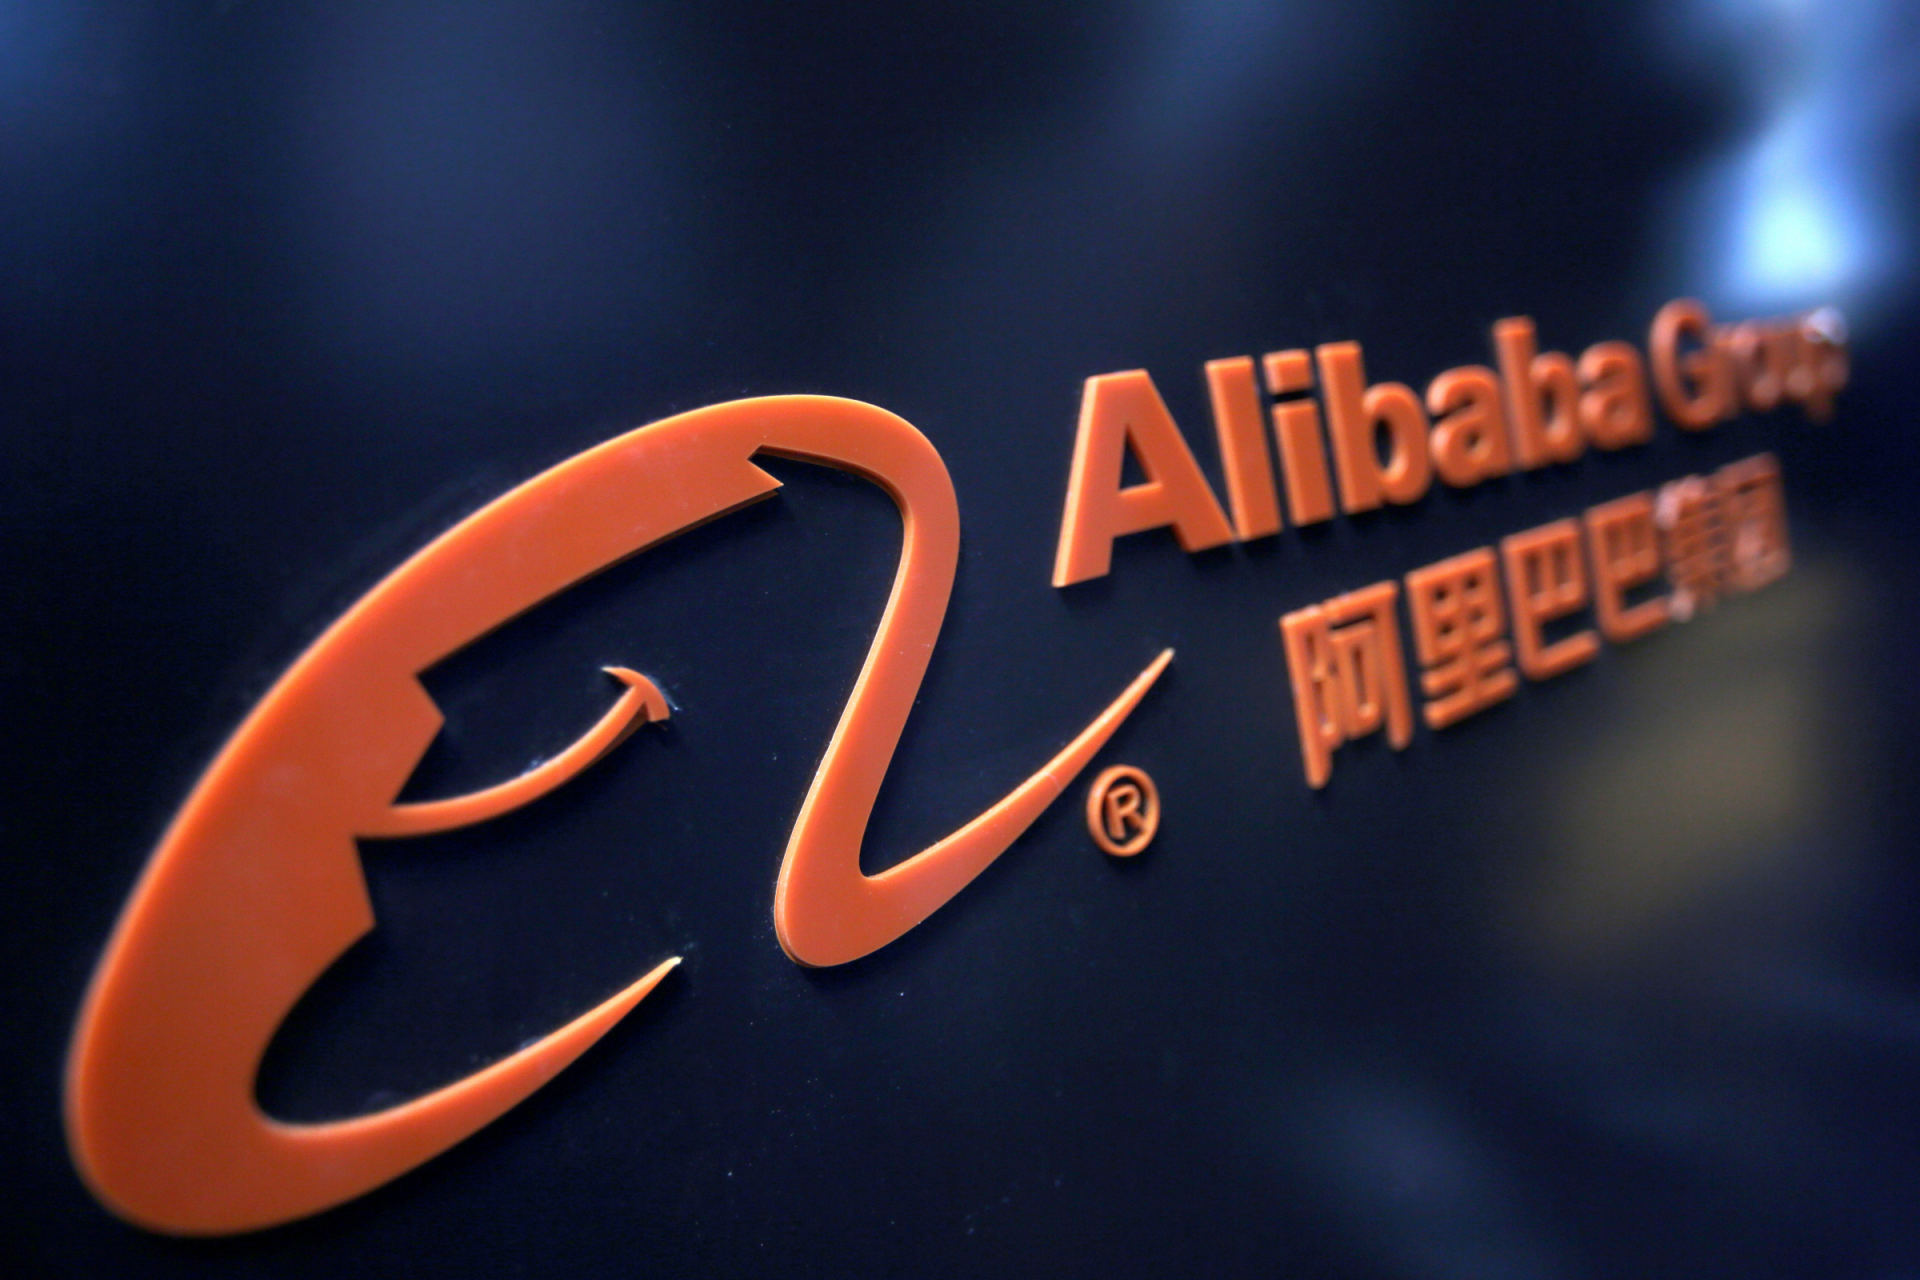 Alibaba akcijų pasirinkimo sandoriai. Geriausia akcijų pasirinkimo patarimų paslauga